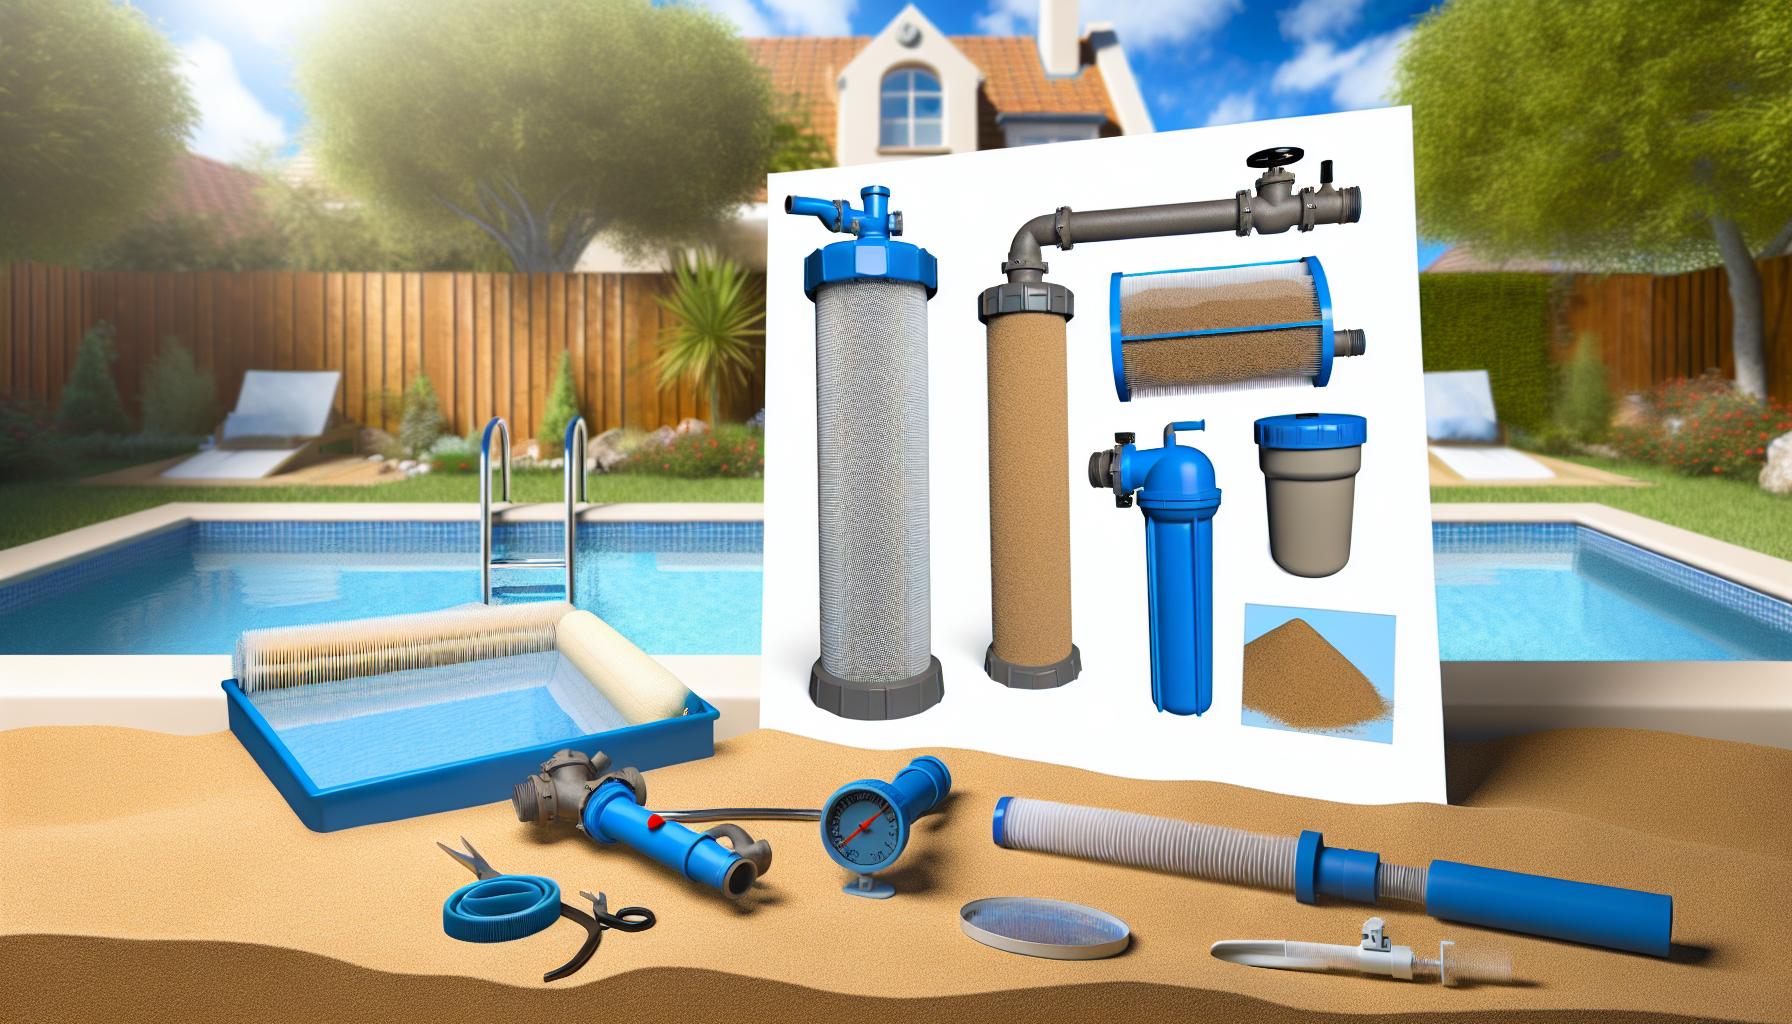 Verschiedene Poolpflege-Ausrüstung und Filteranlagen vor einem Hinterhof-Swimmingpool.